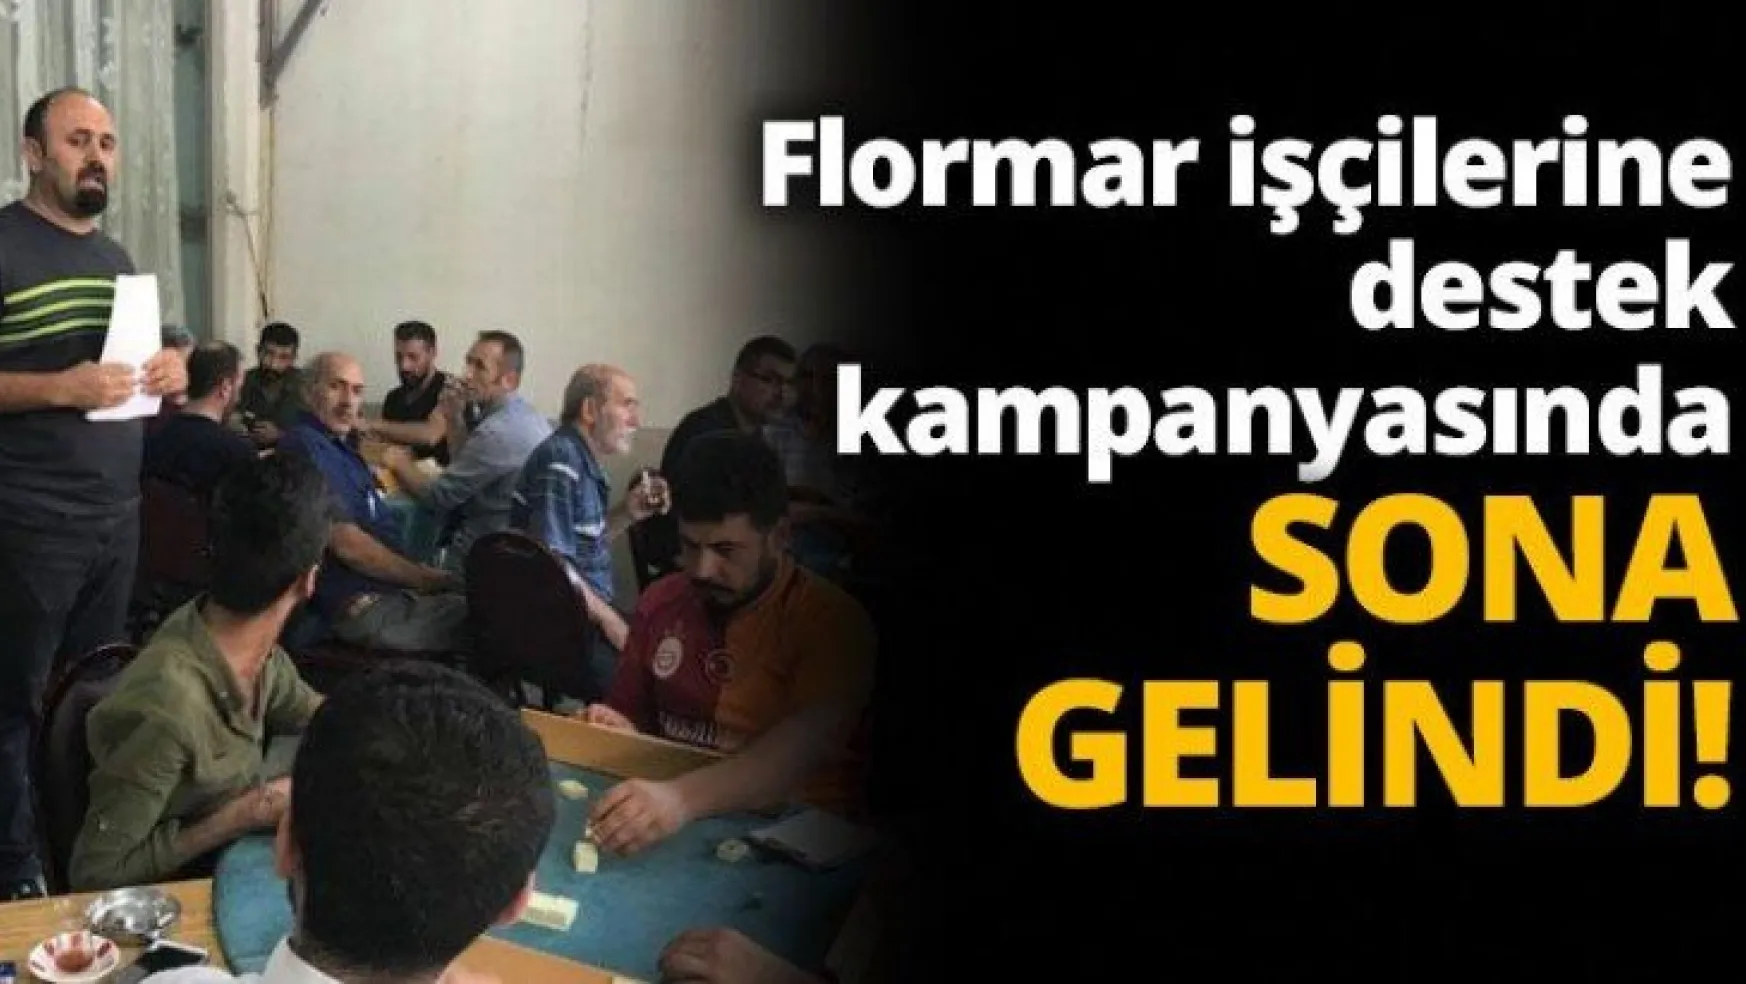 Flormar işçilerine destek kampanyasında sona gelindi